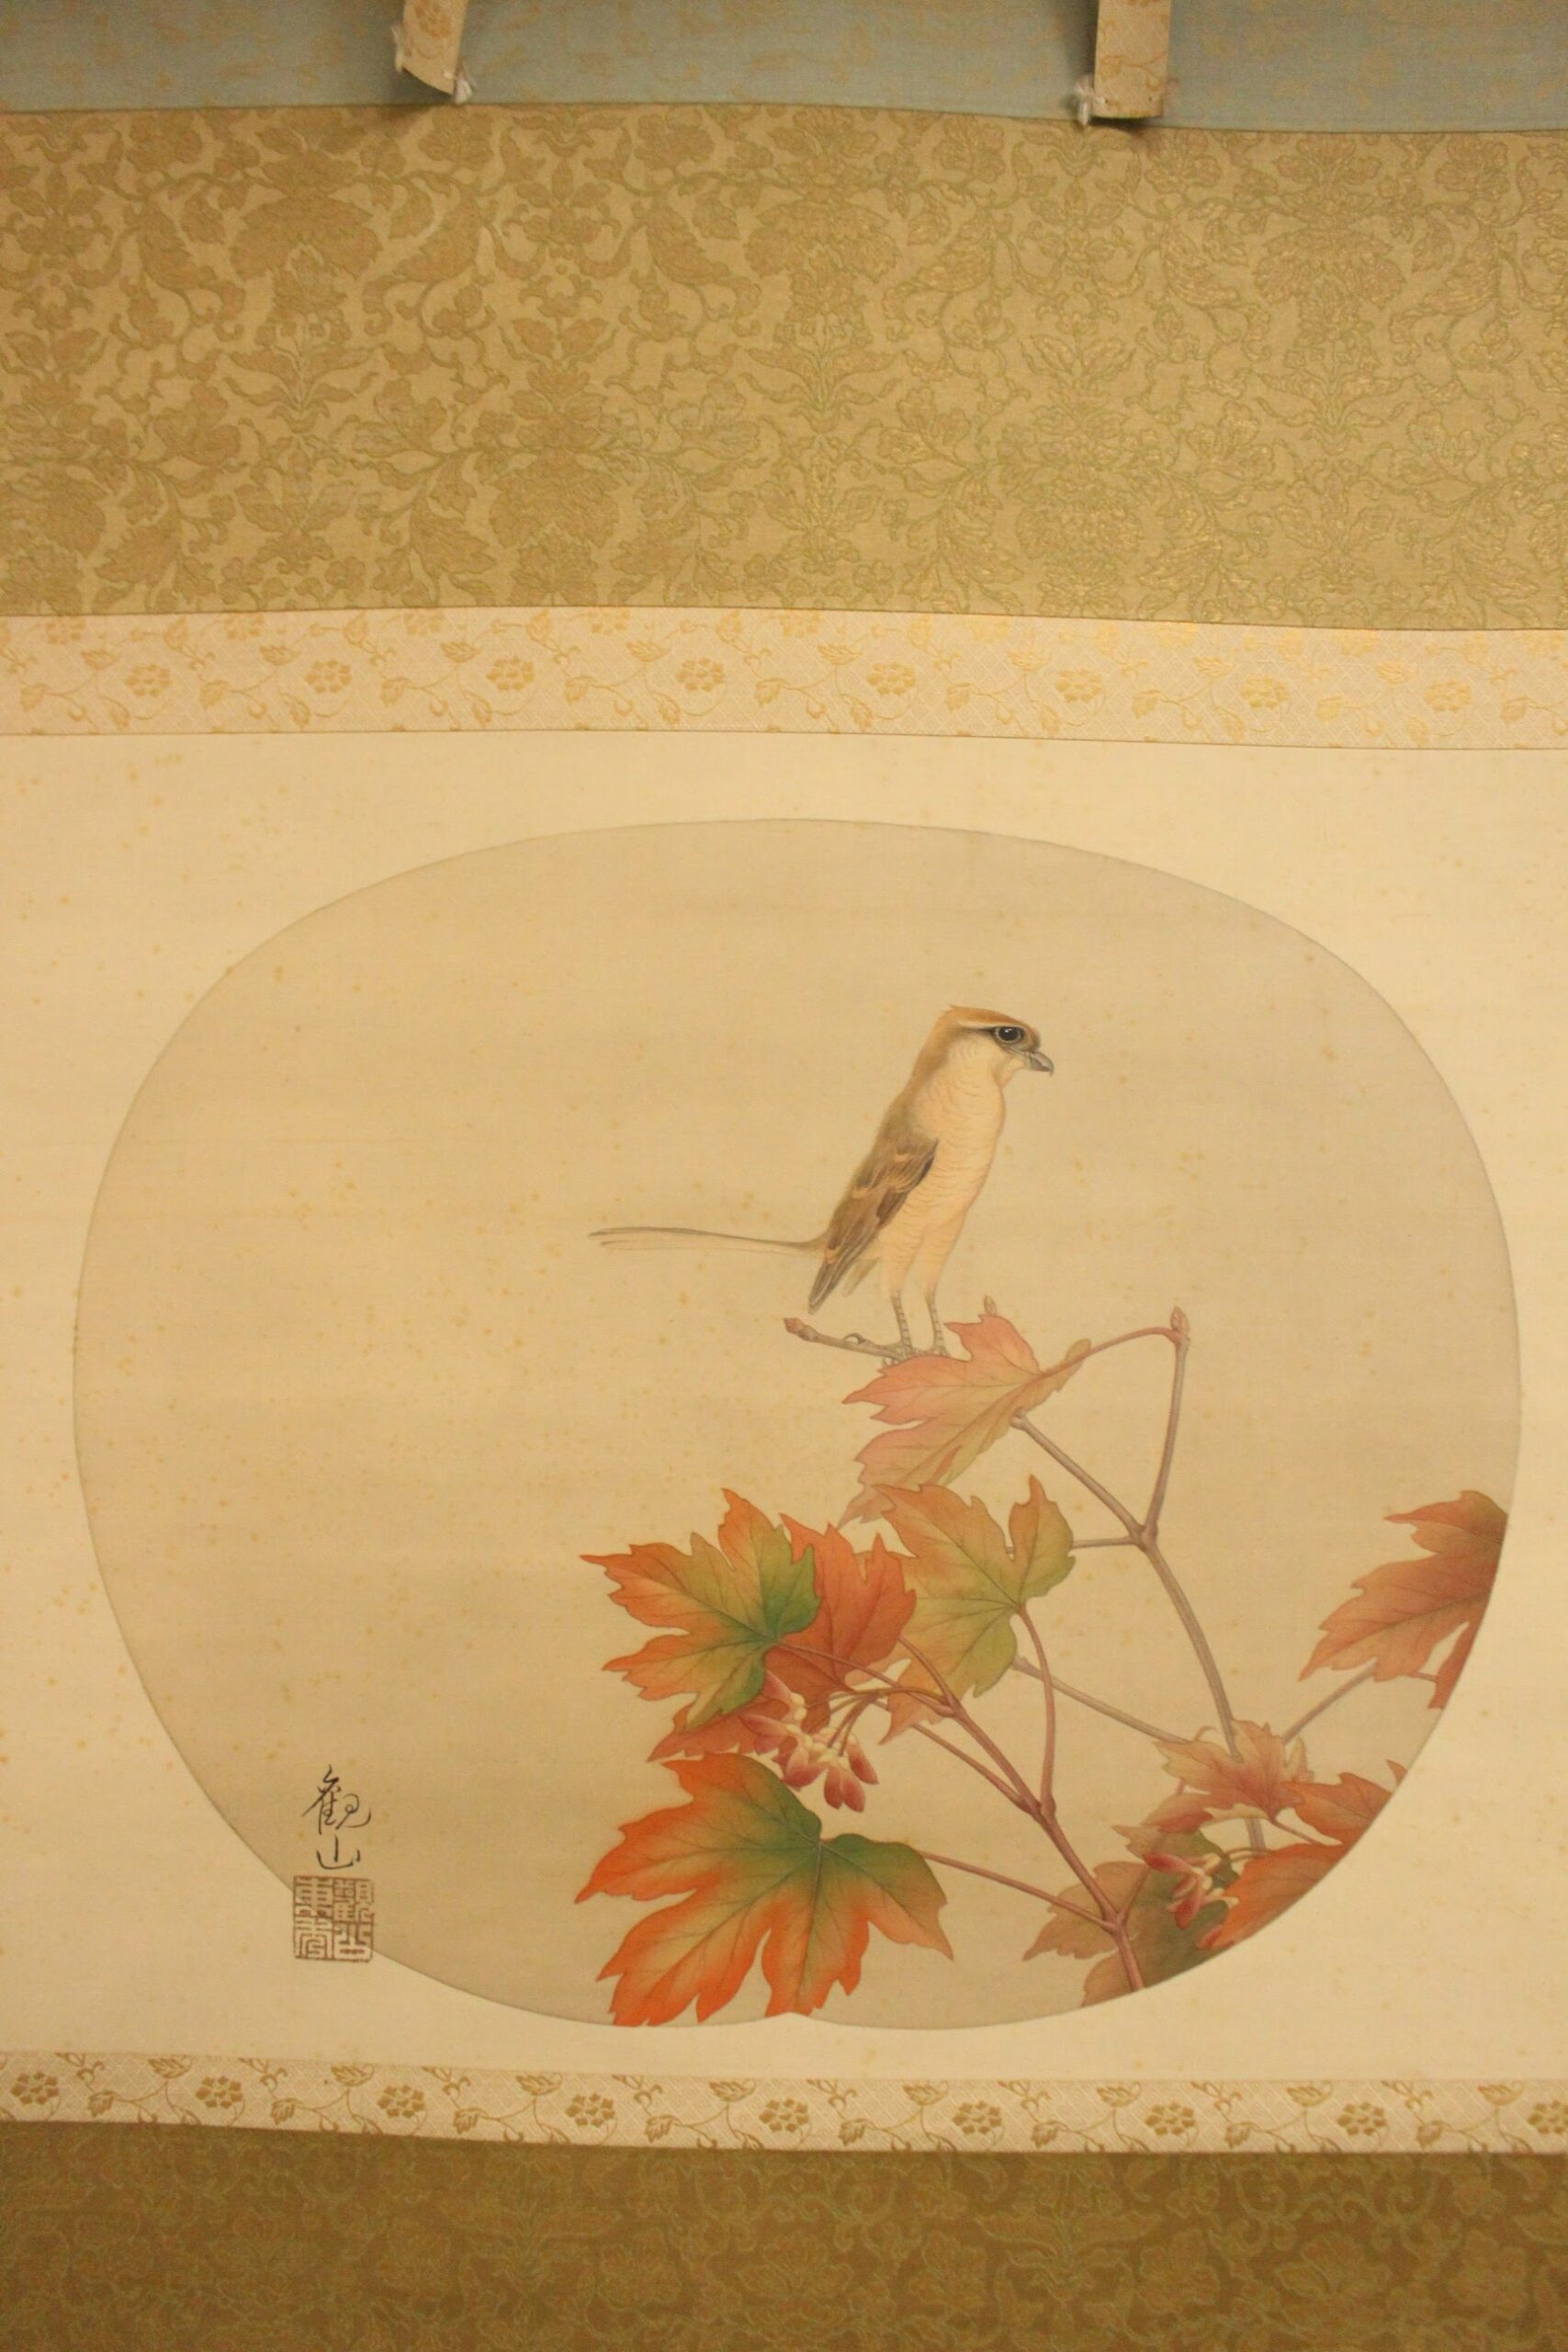 下村観山の作品の特長。古典的日本画の継承と西洋的色彩の融合